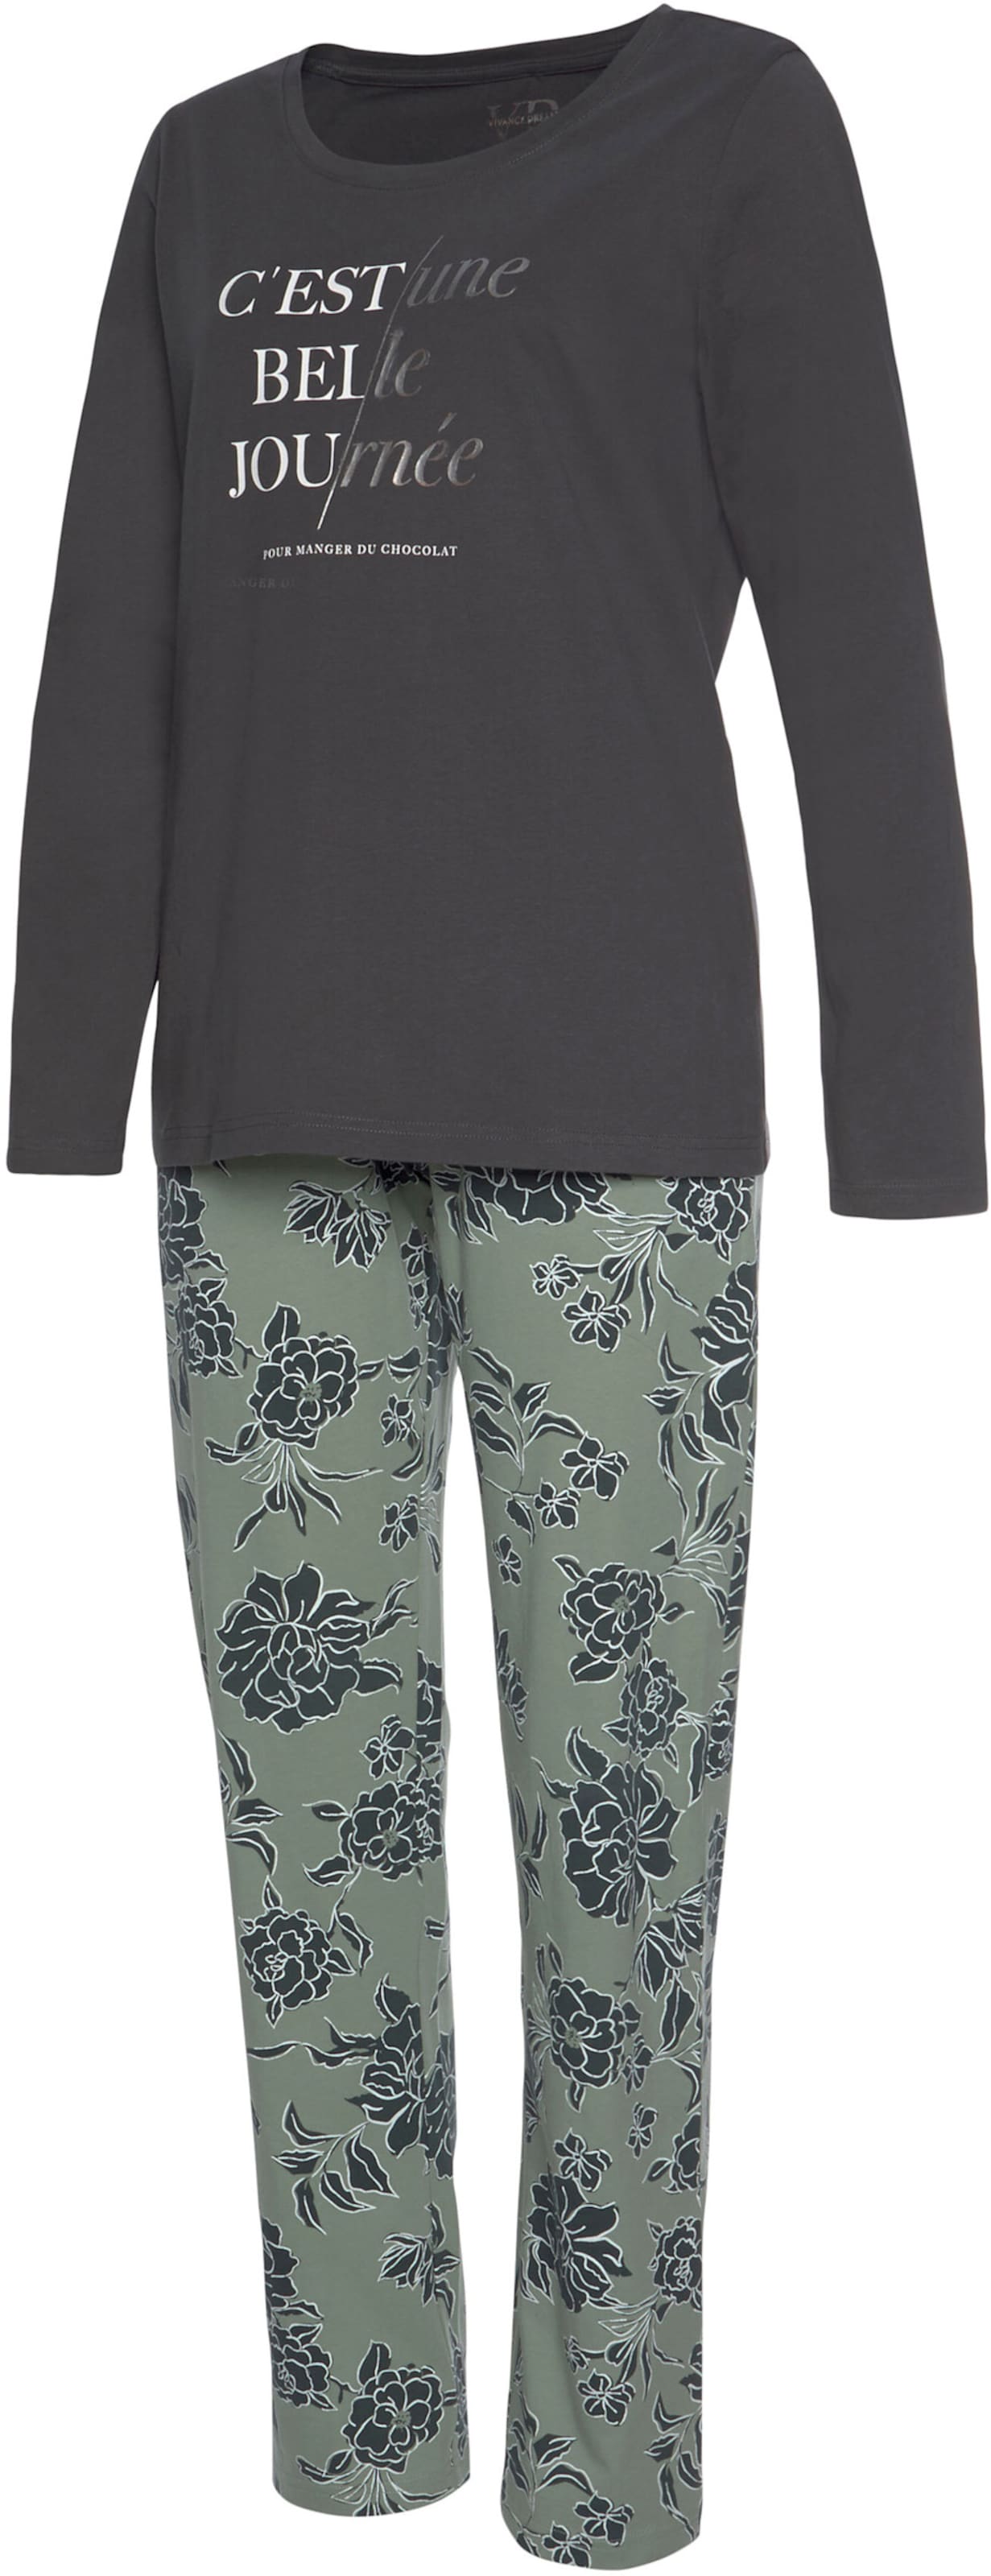 Pyjama in graphit-graugrün von Vivance Dreams